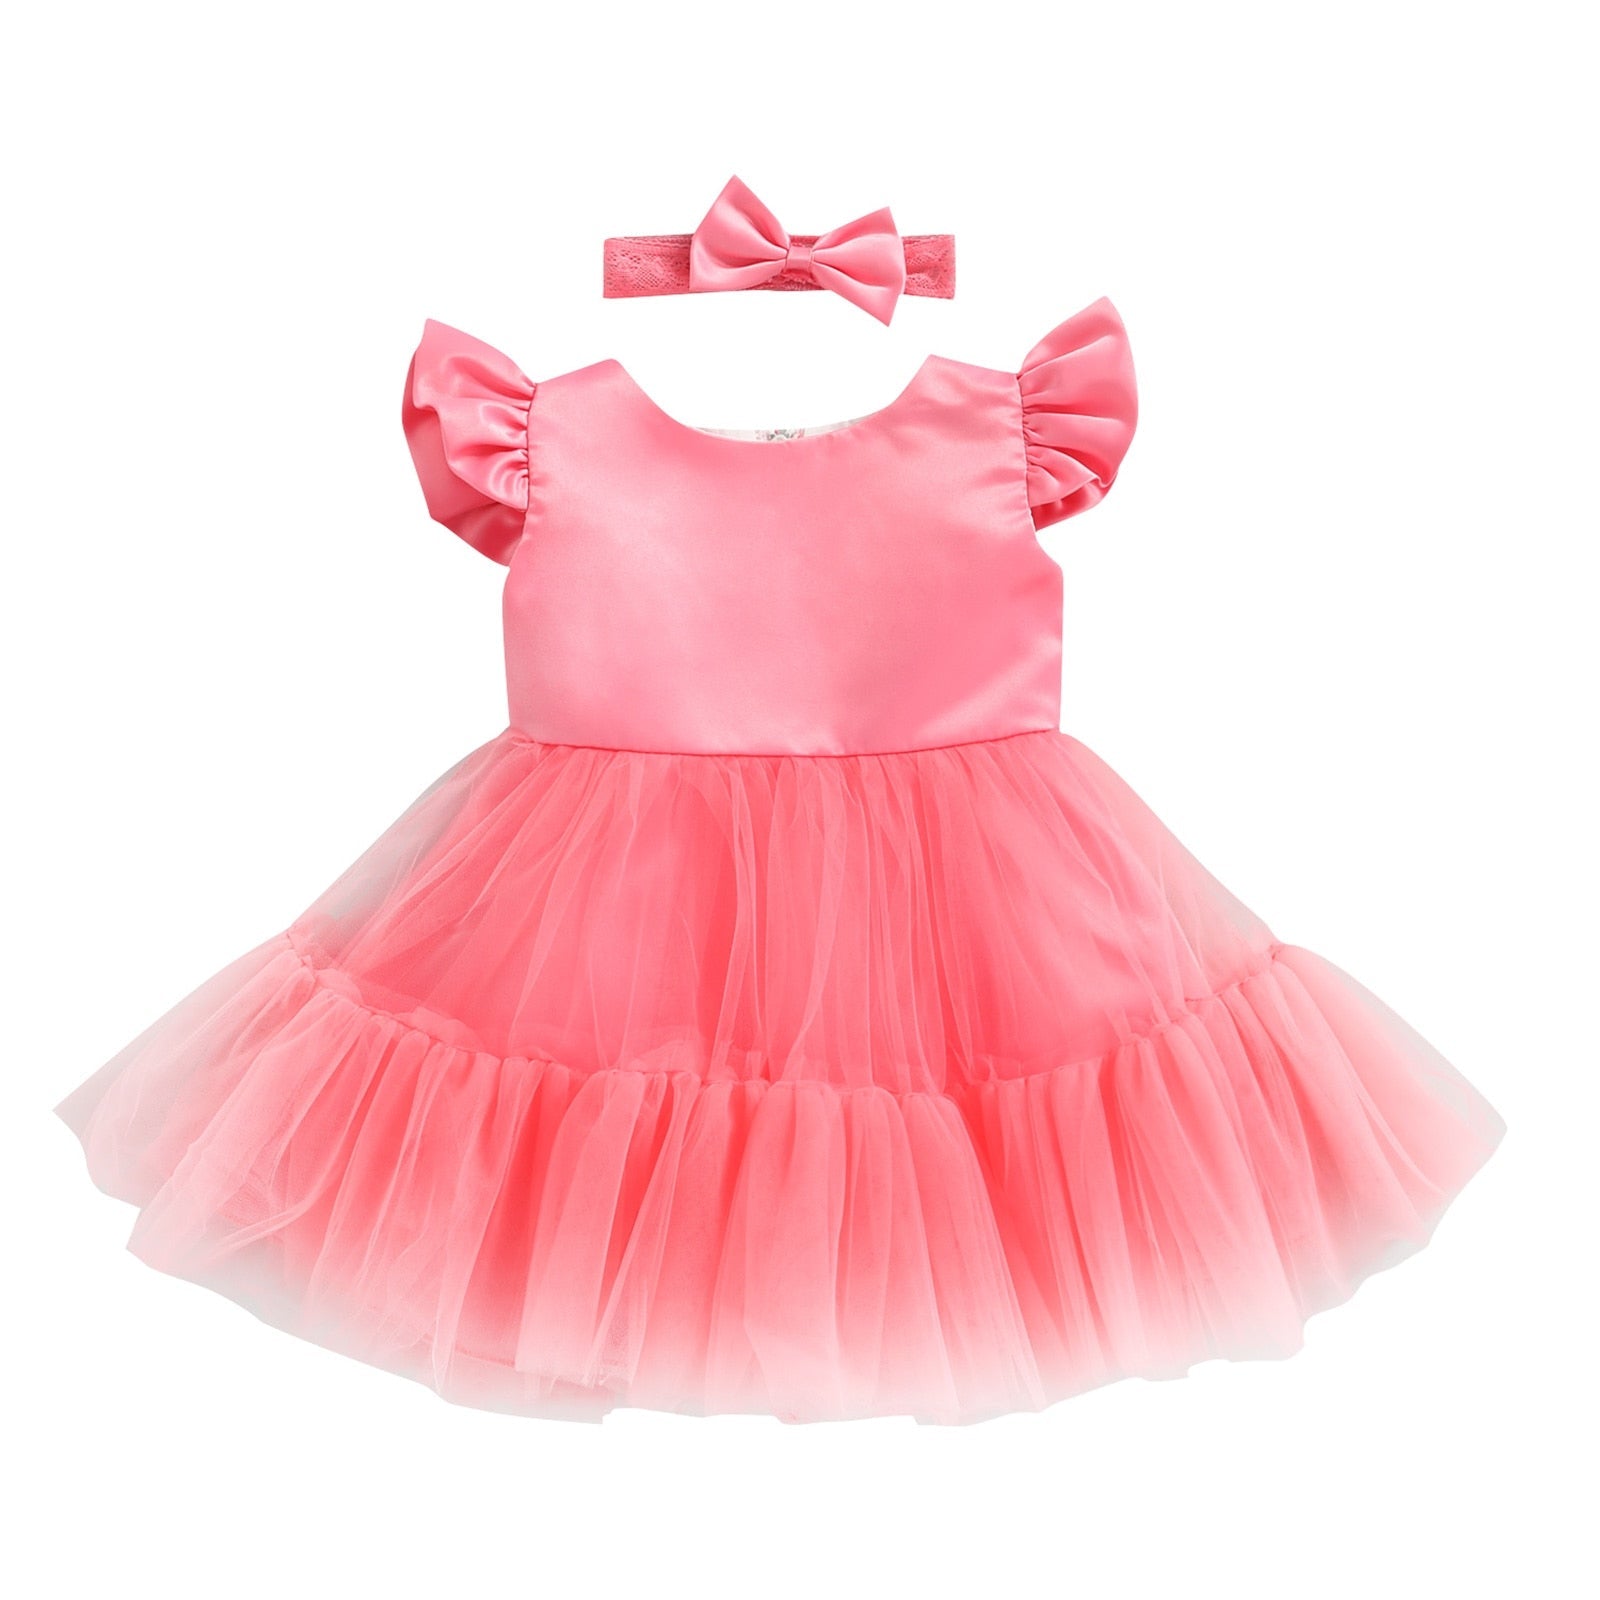 Vestido Infantil + Lacinho Tule vestido Loja Click Certo Vermelho 2-3 anos 57cm 